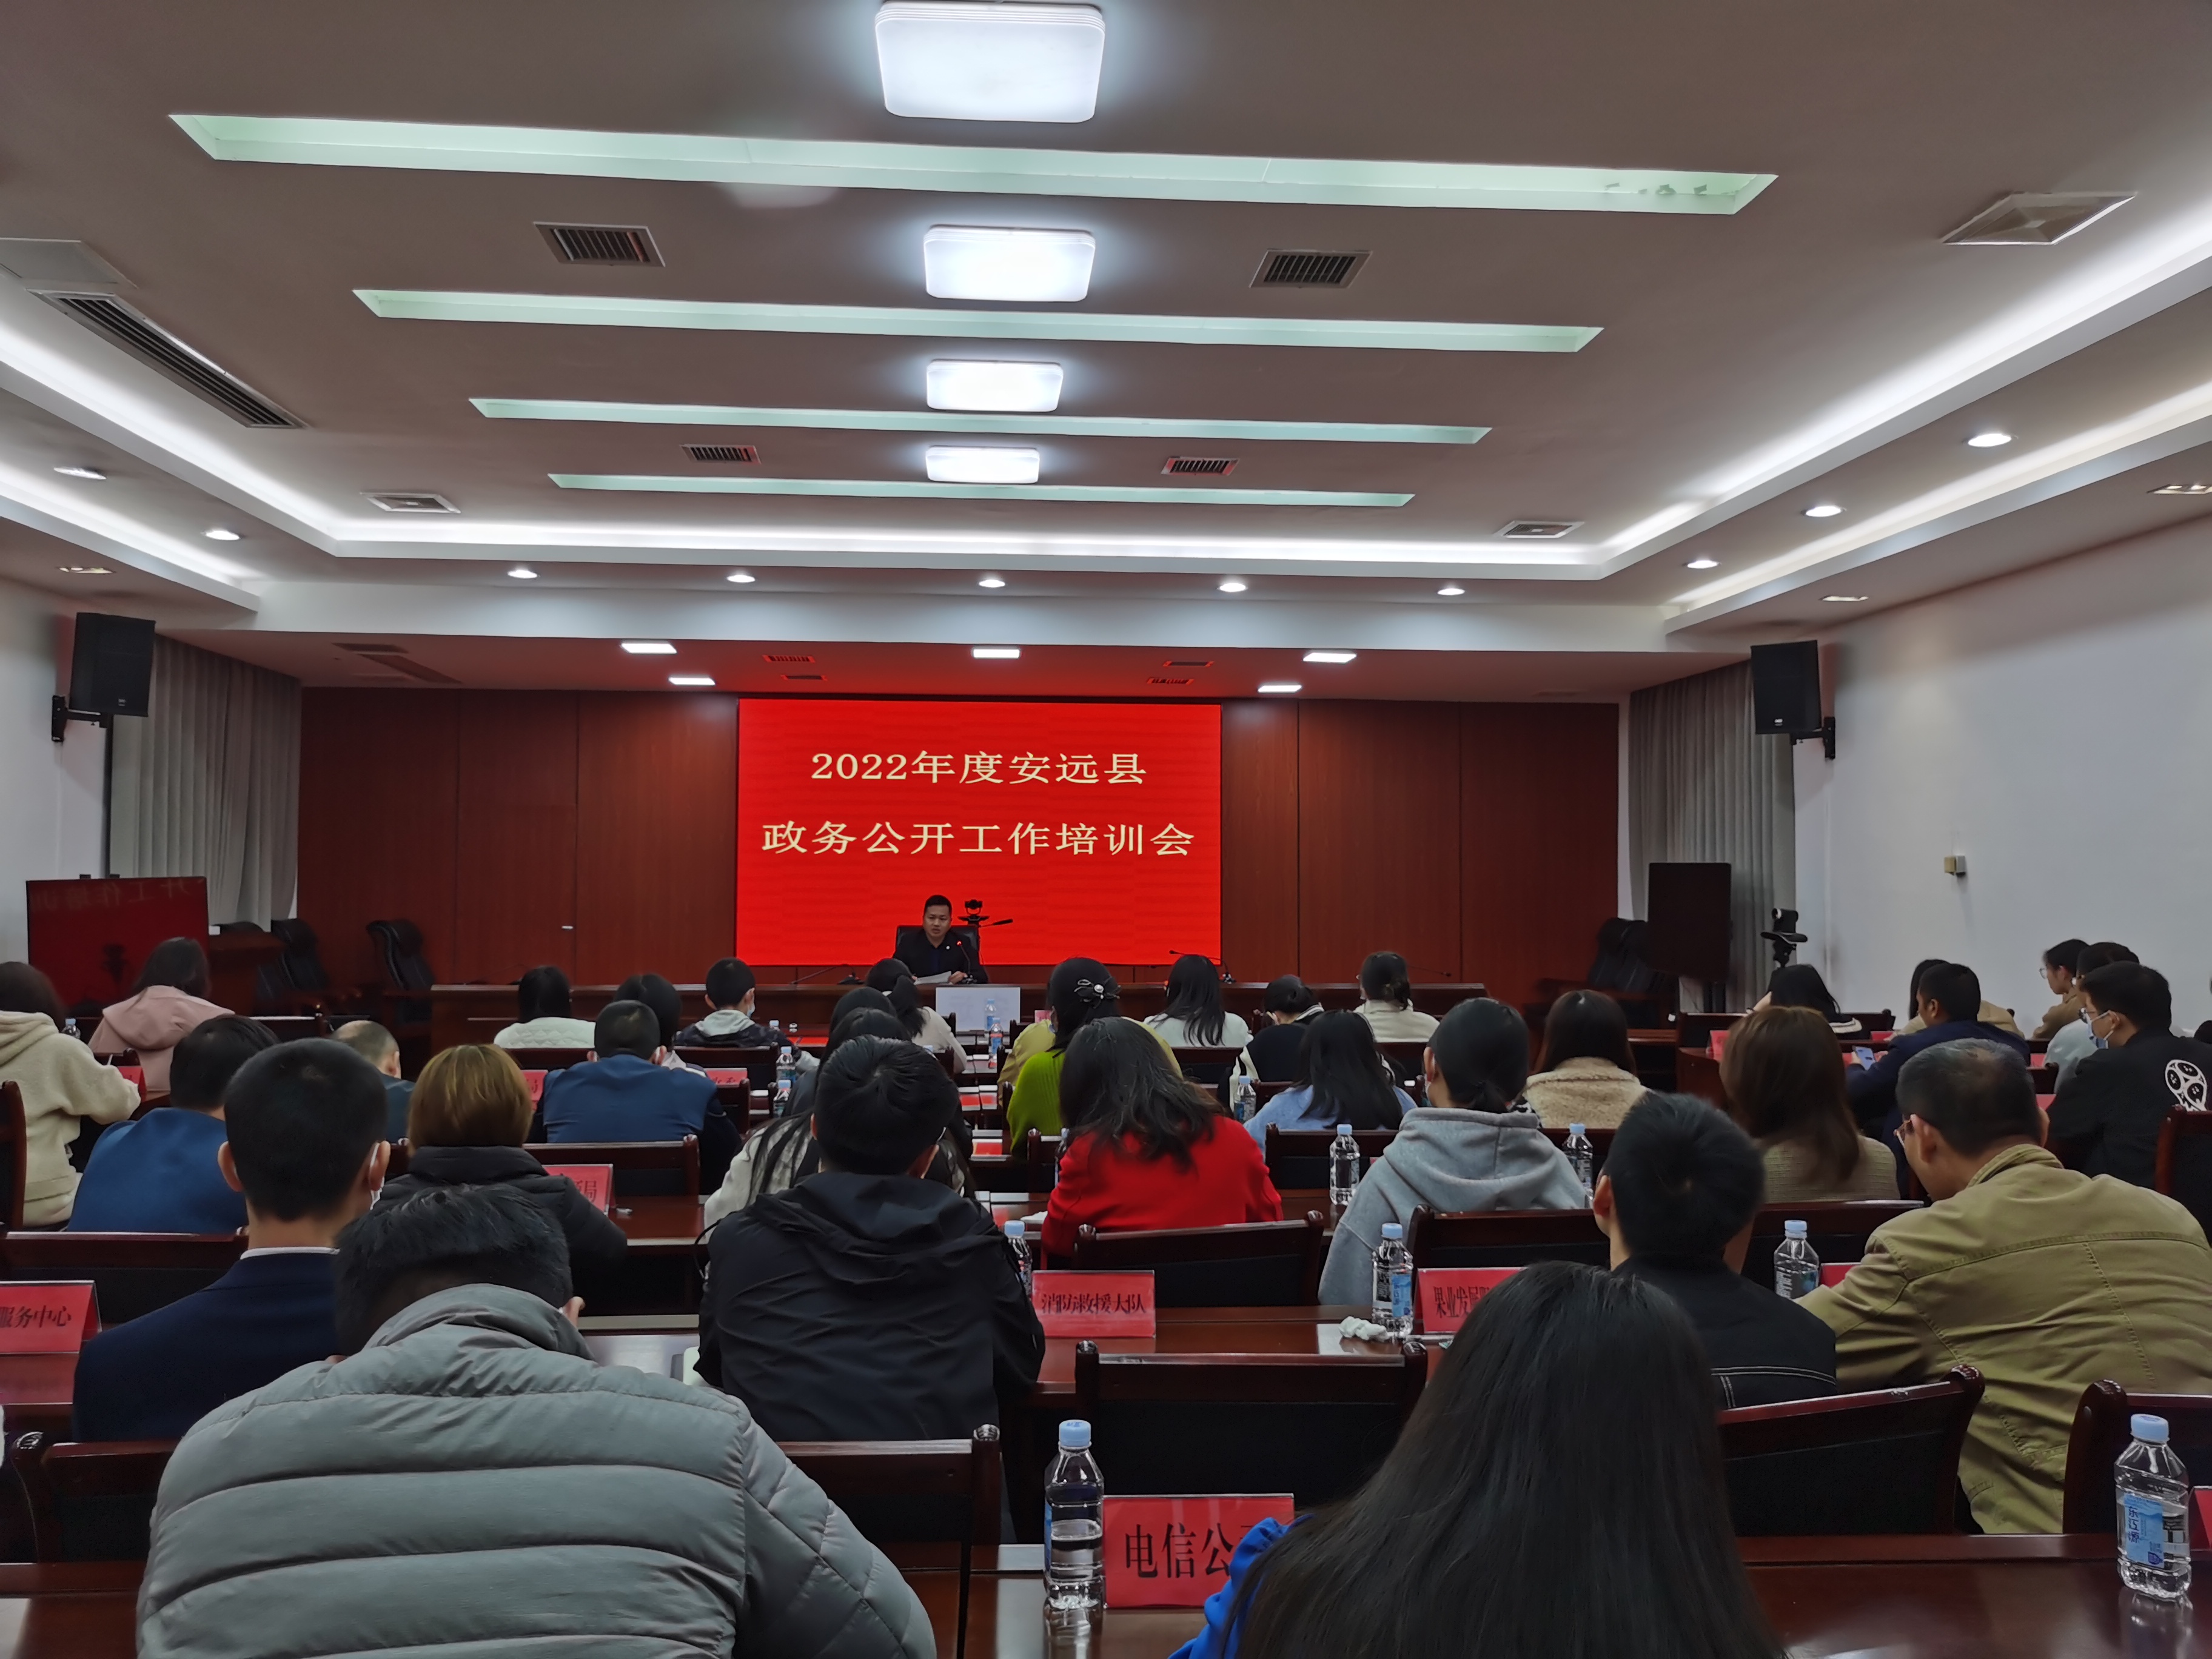 安远县2022年度政务公开培训会